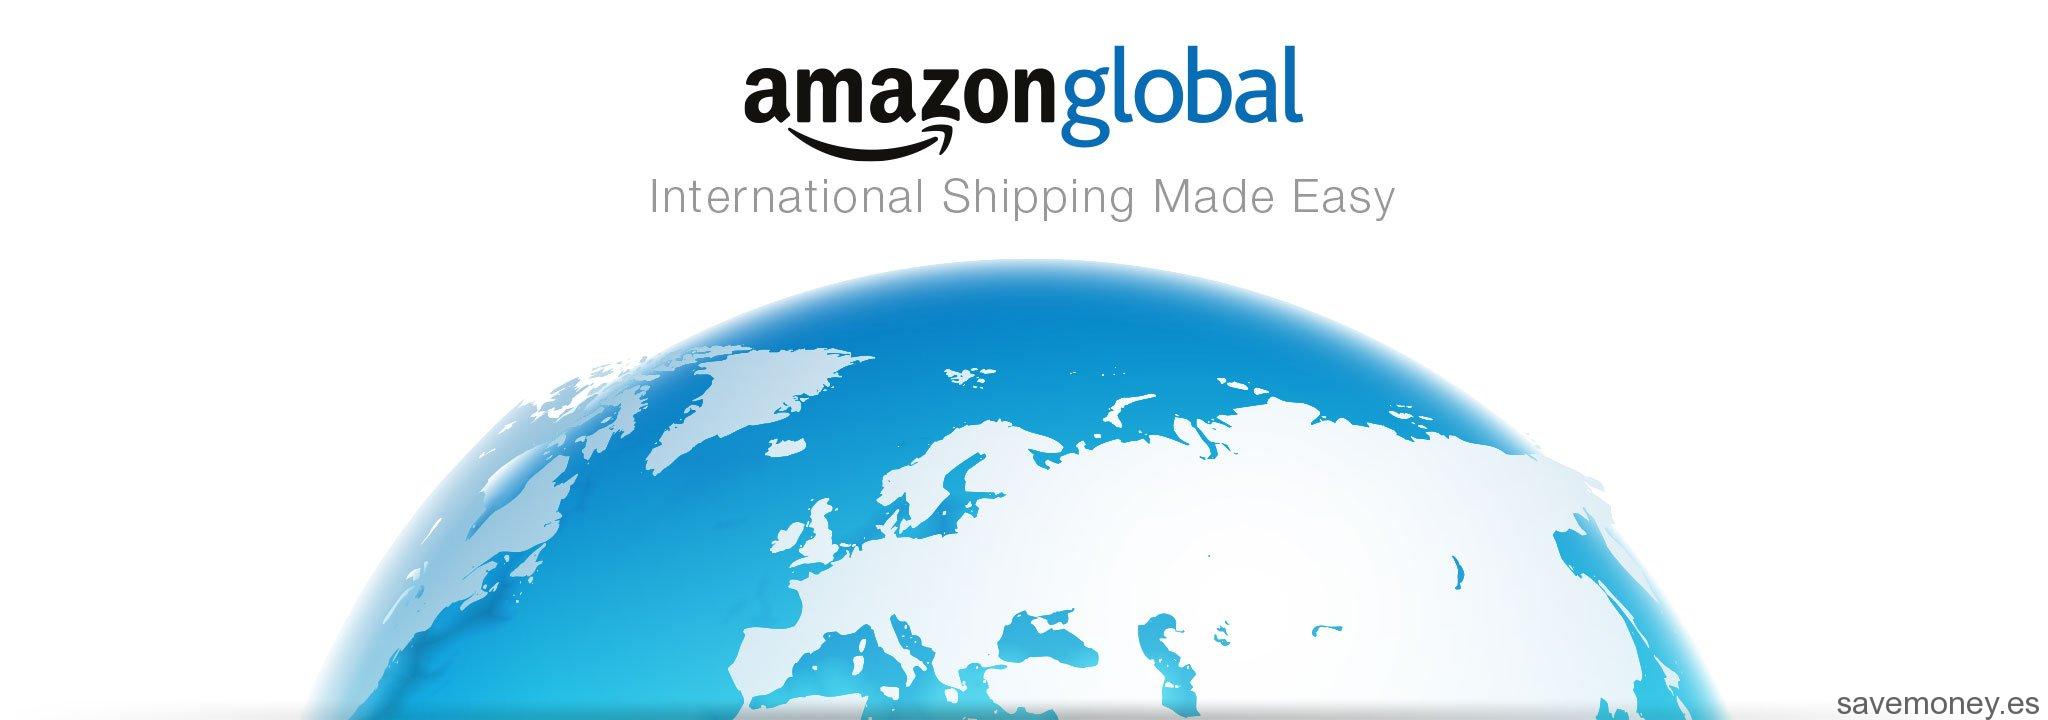 Amazon-global